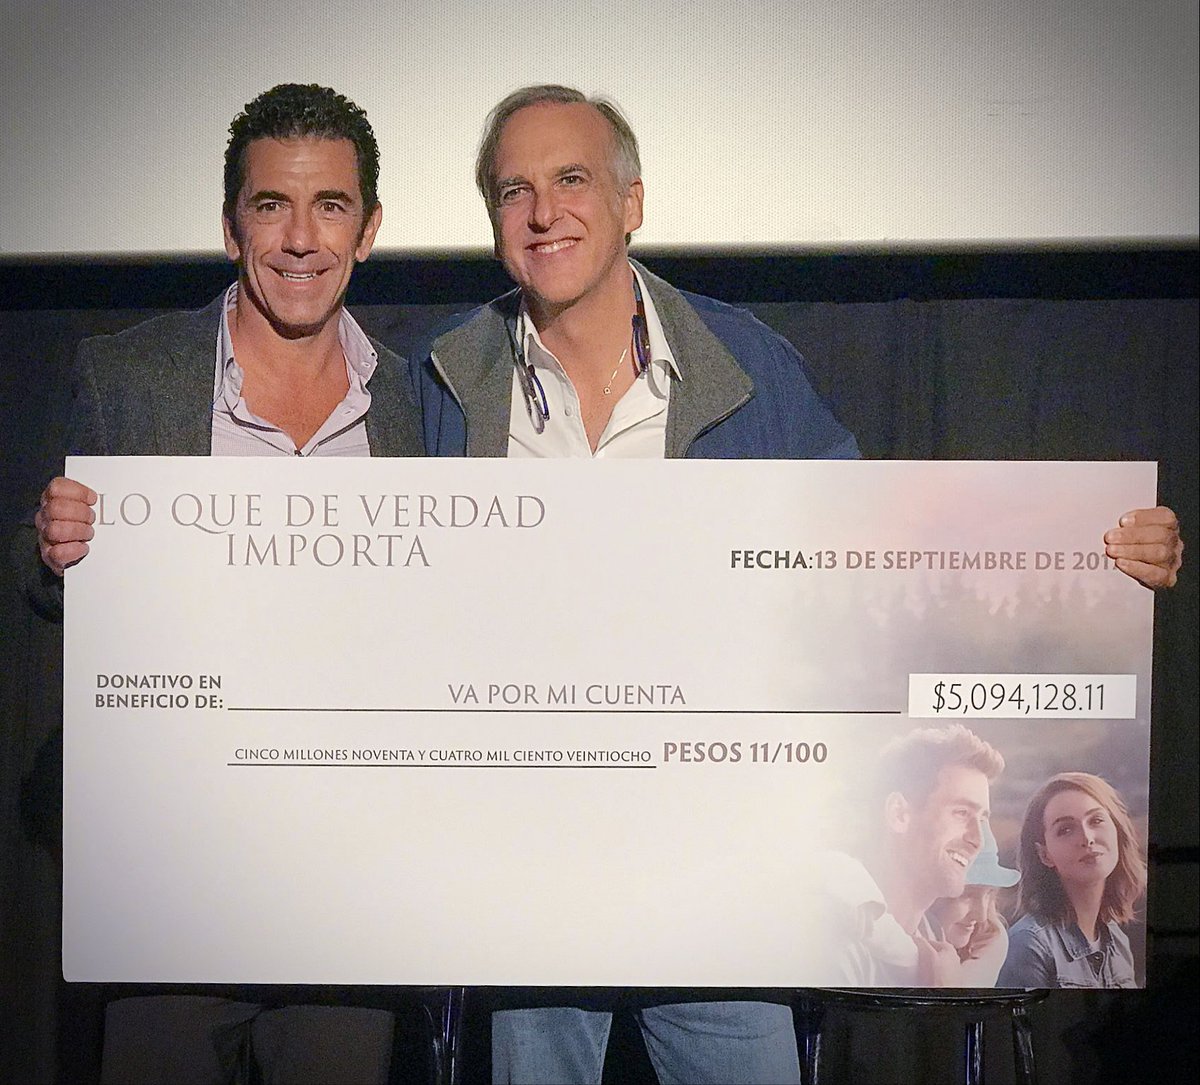 Ayer entregamos a @CasadelaAmistad y @VaXMiCuenta lo recaudado por la película. ¡Muchas gracias!